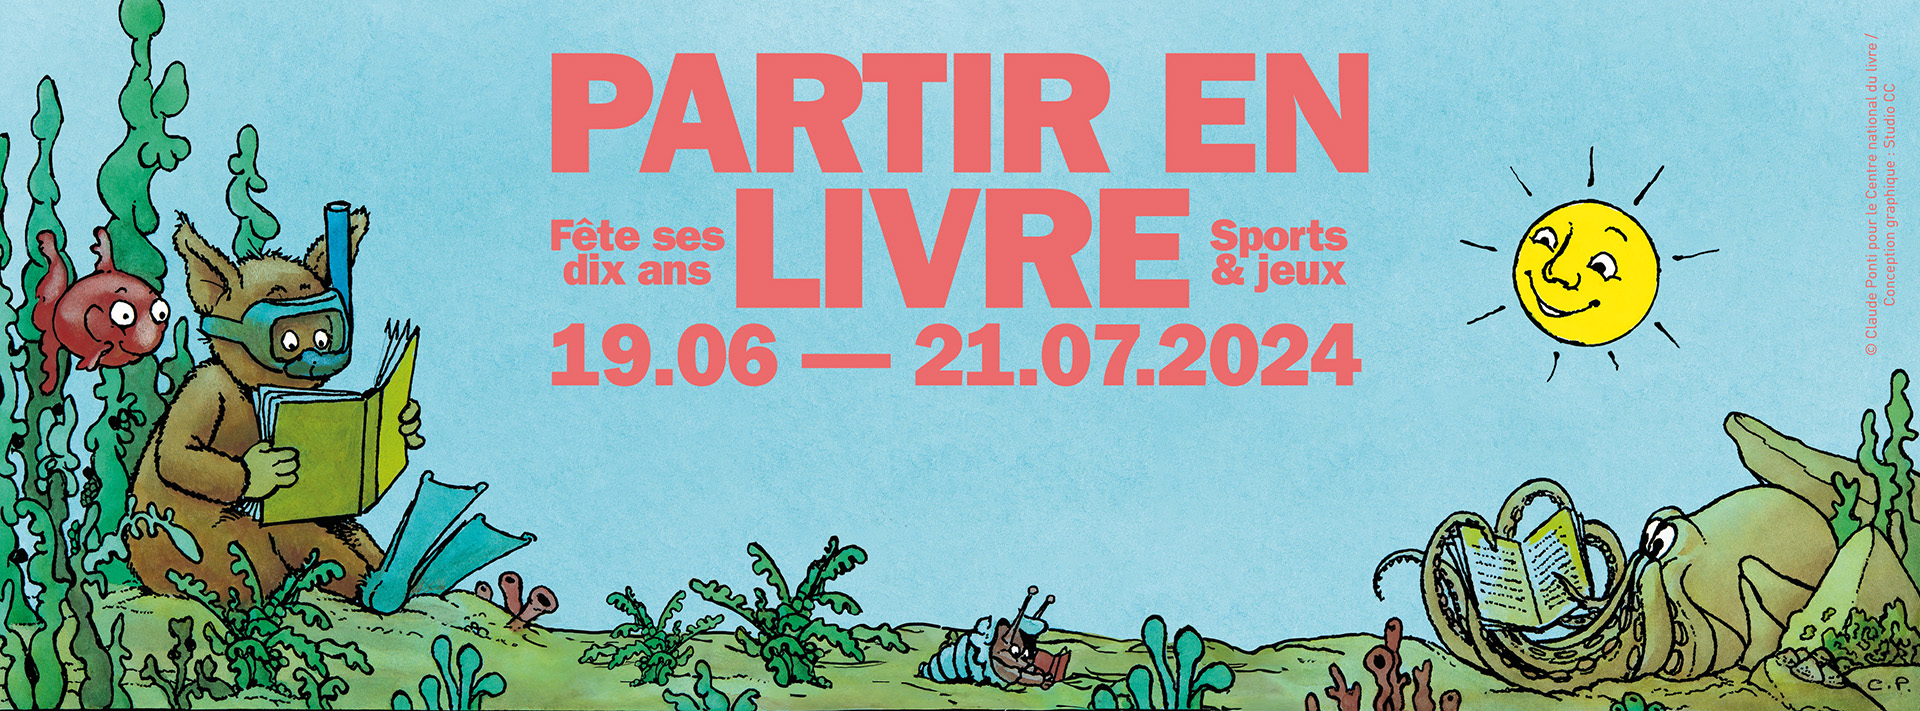 Affiche du festival avec le titre du festival "Partir en Livre", les dates du 19.06 au 21.07.2024 et un dessin de Claude Ponti